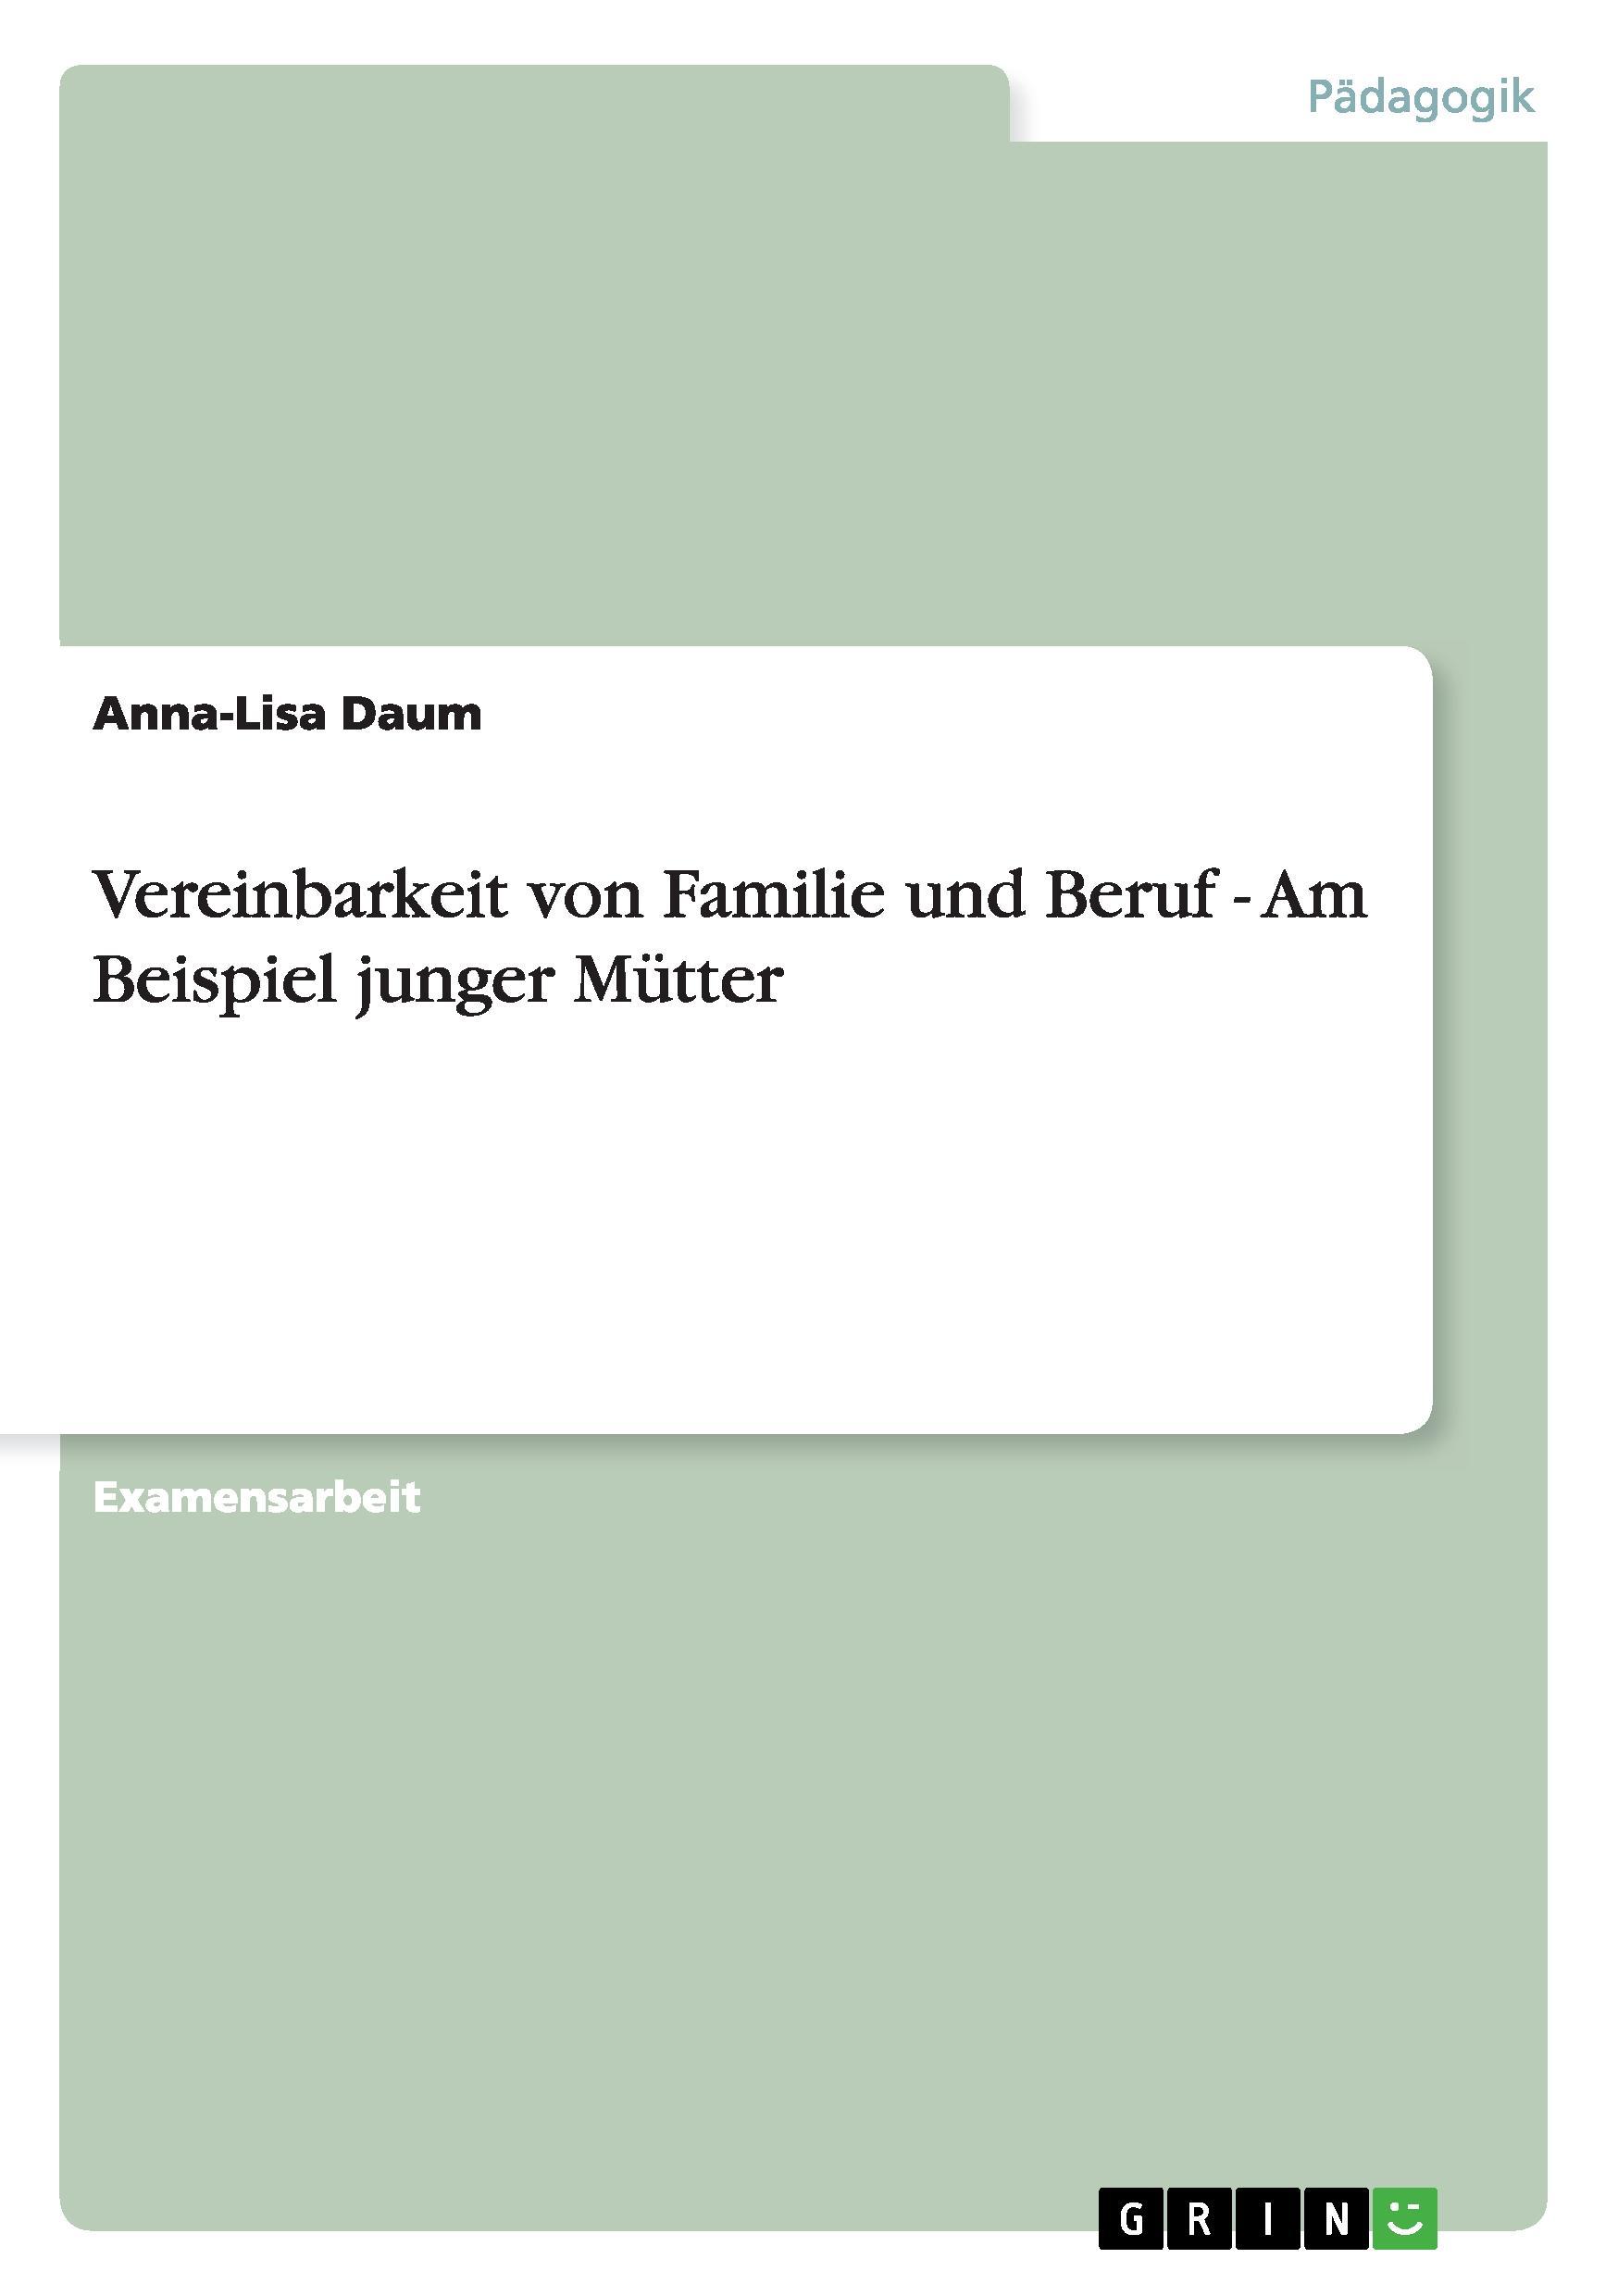 Vereinbarkeit von Familie und Beruf - Am Beispiel junger Muetter - Daum, Anna-Lisa